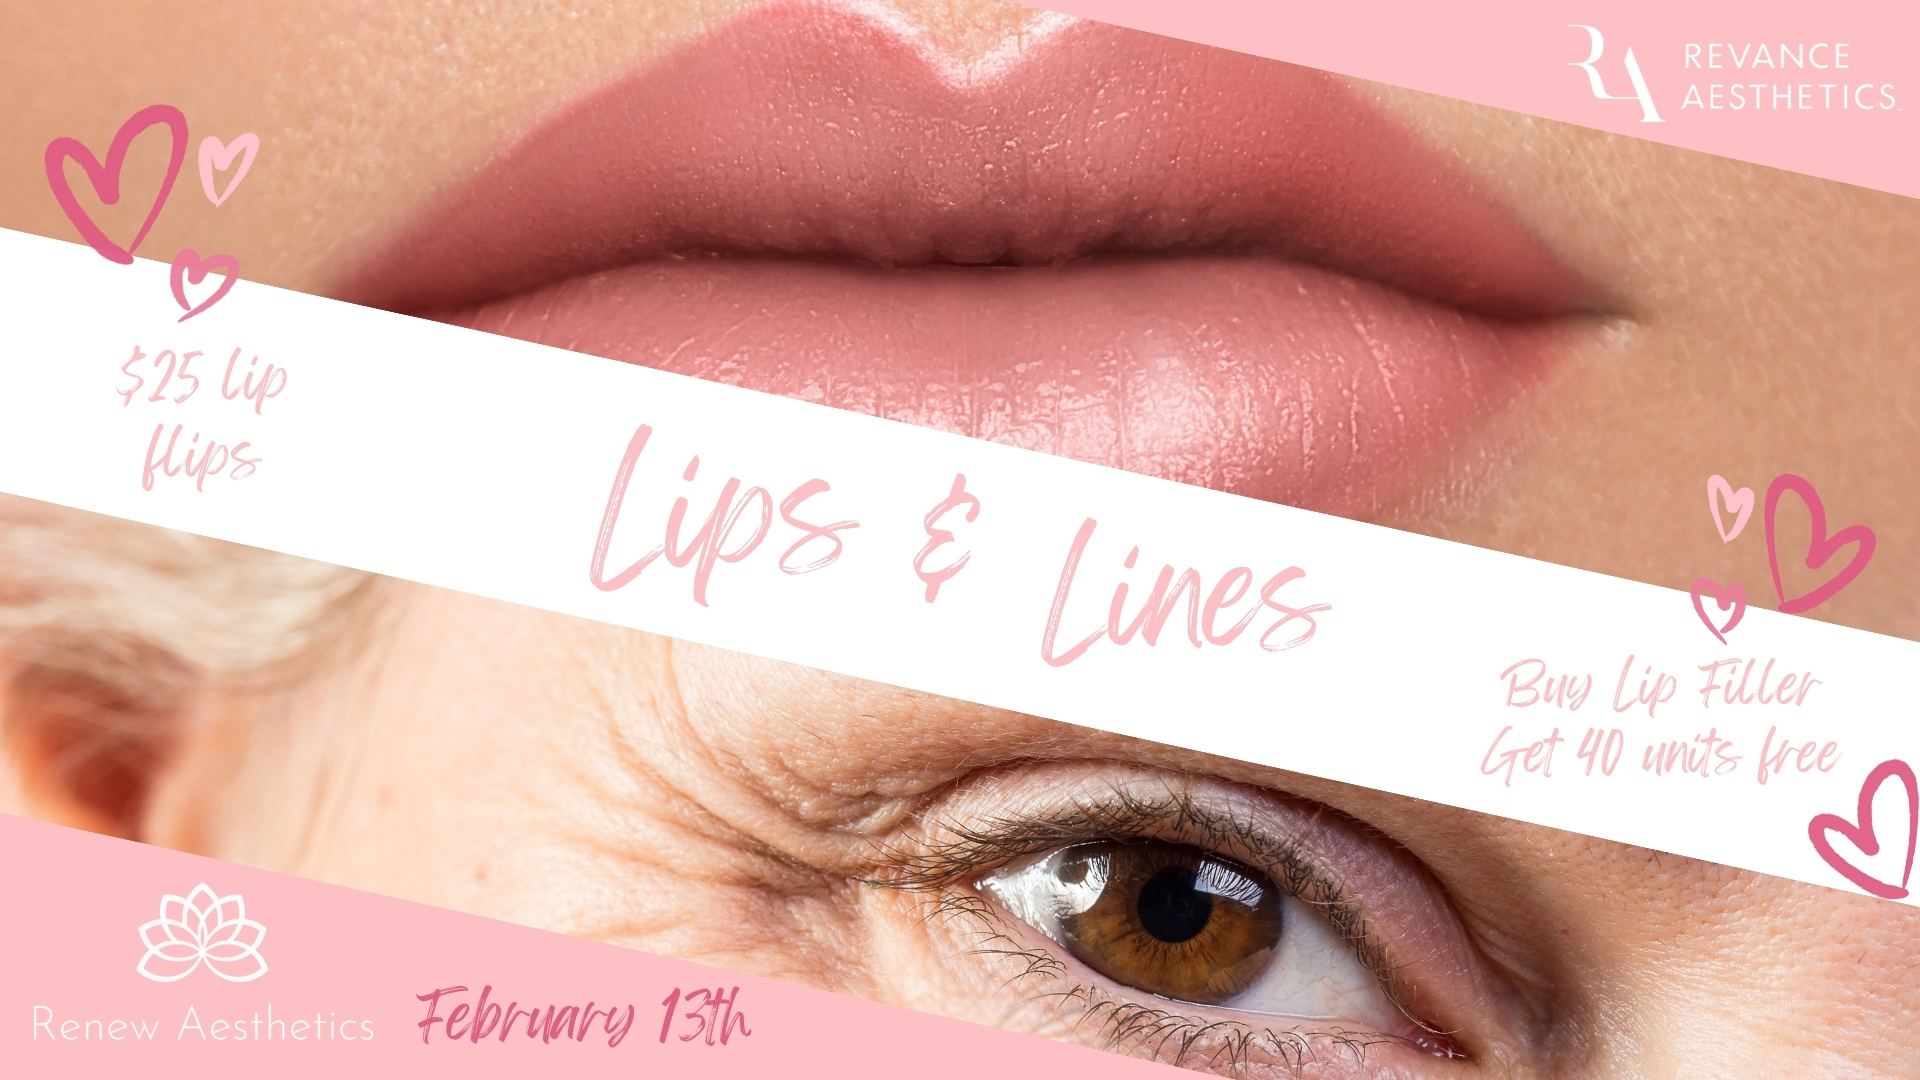 Lips & Lines Event medspa